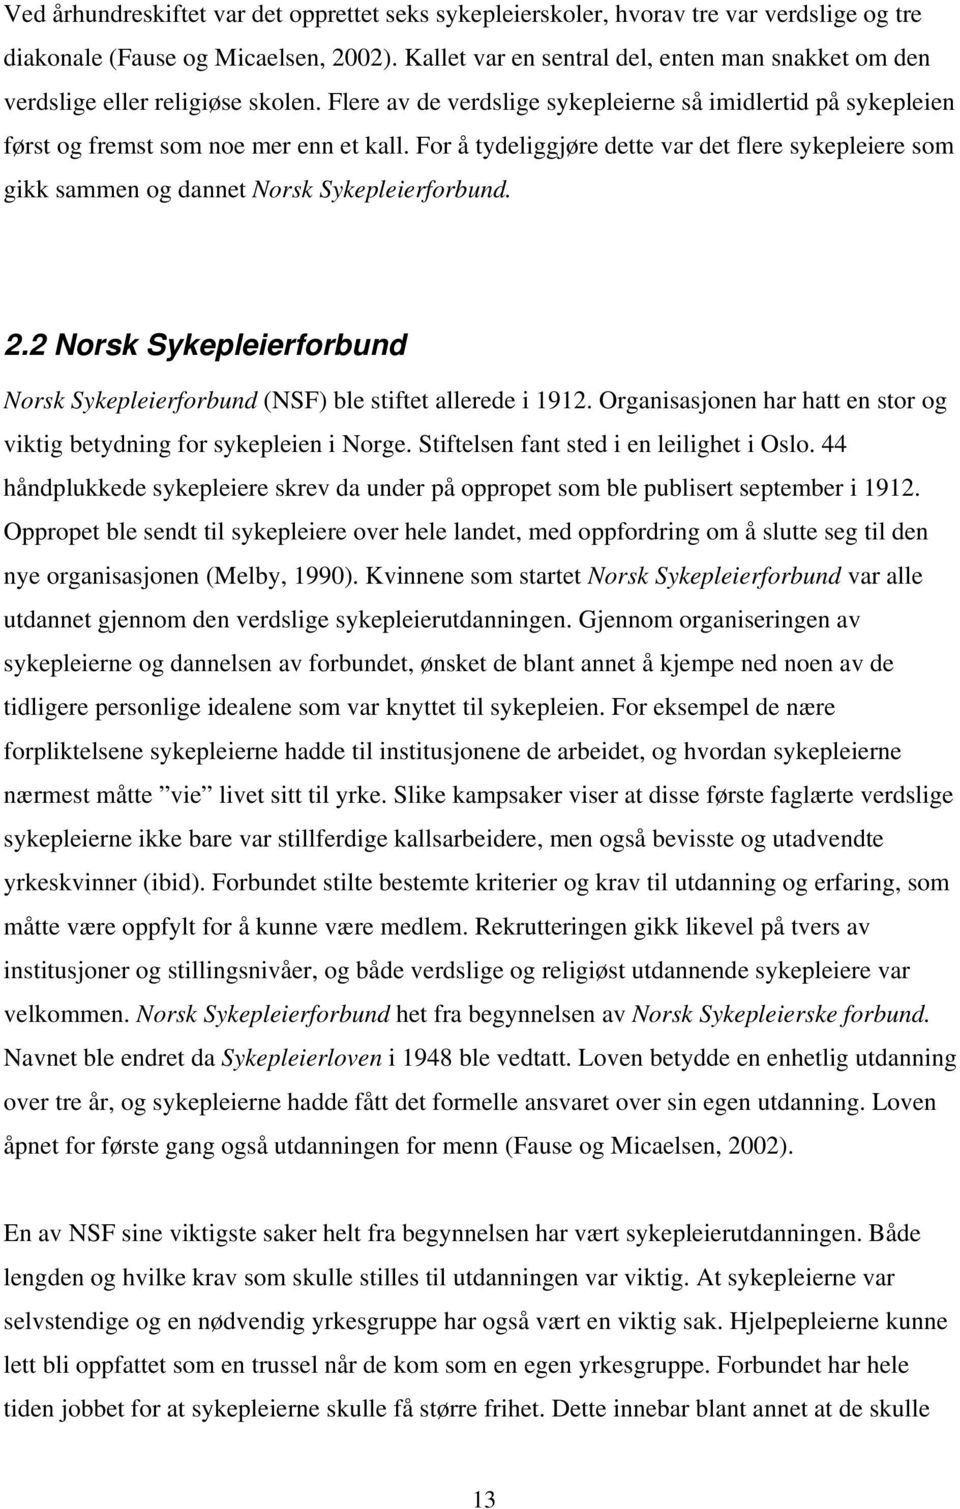 For å tydeliggjøre dette var det flere sykepleiere som gikk sammen og dannet Norsk Sykepleierforbund. 2.2 Norsk Sykepleierforbund Norsk Sykepleierforbund (NSF) ble stiftet allerede i 1912.